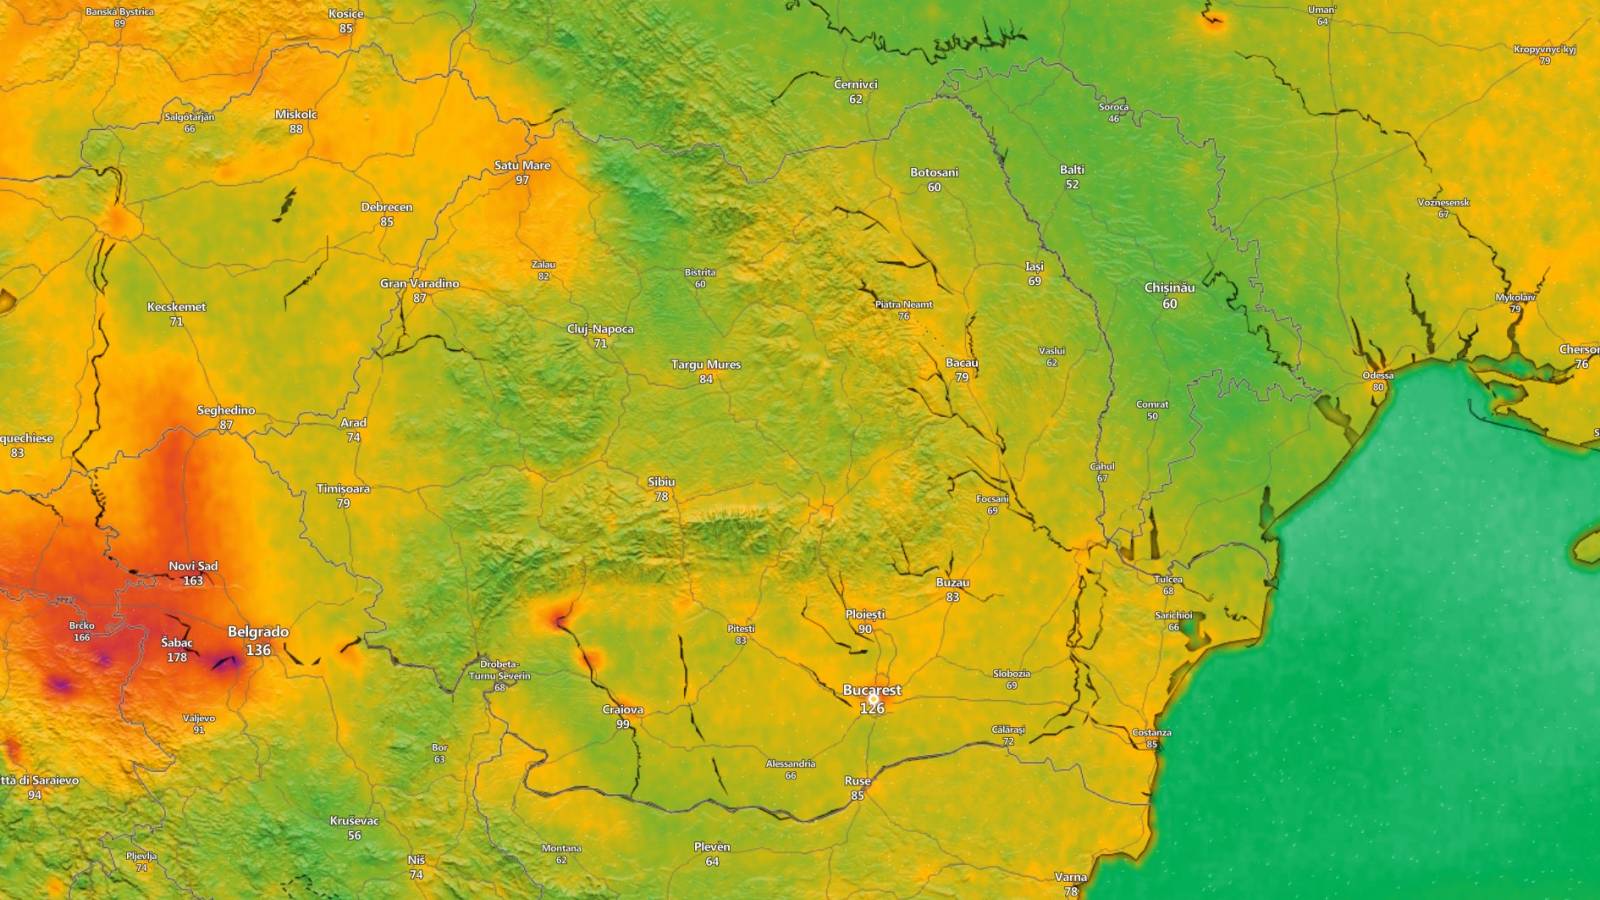 ANM Starea Vremii Anuntata Oficial Prognoza Meteo ULTIM MOMENT 30 Zile Romania